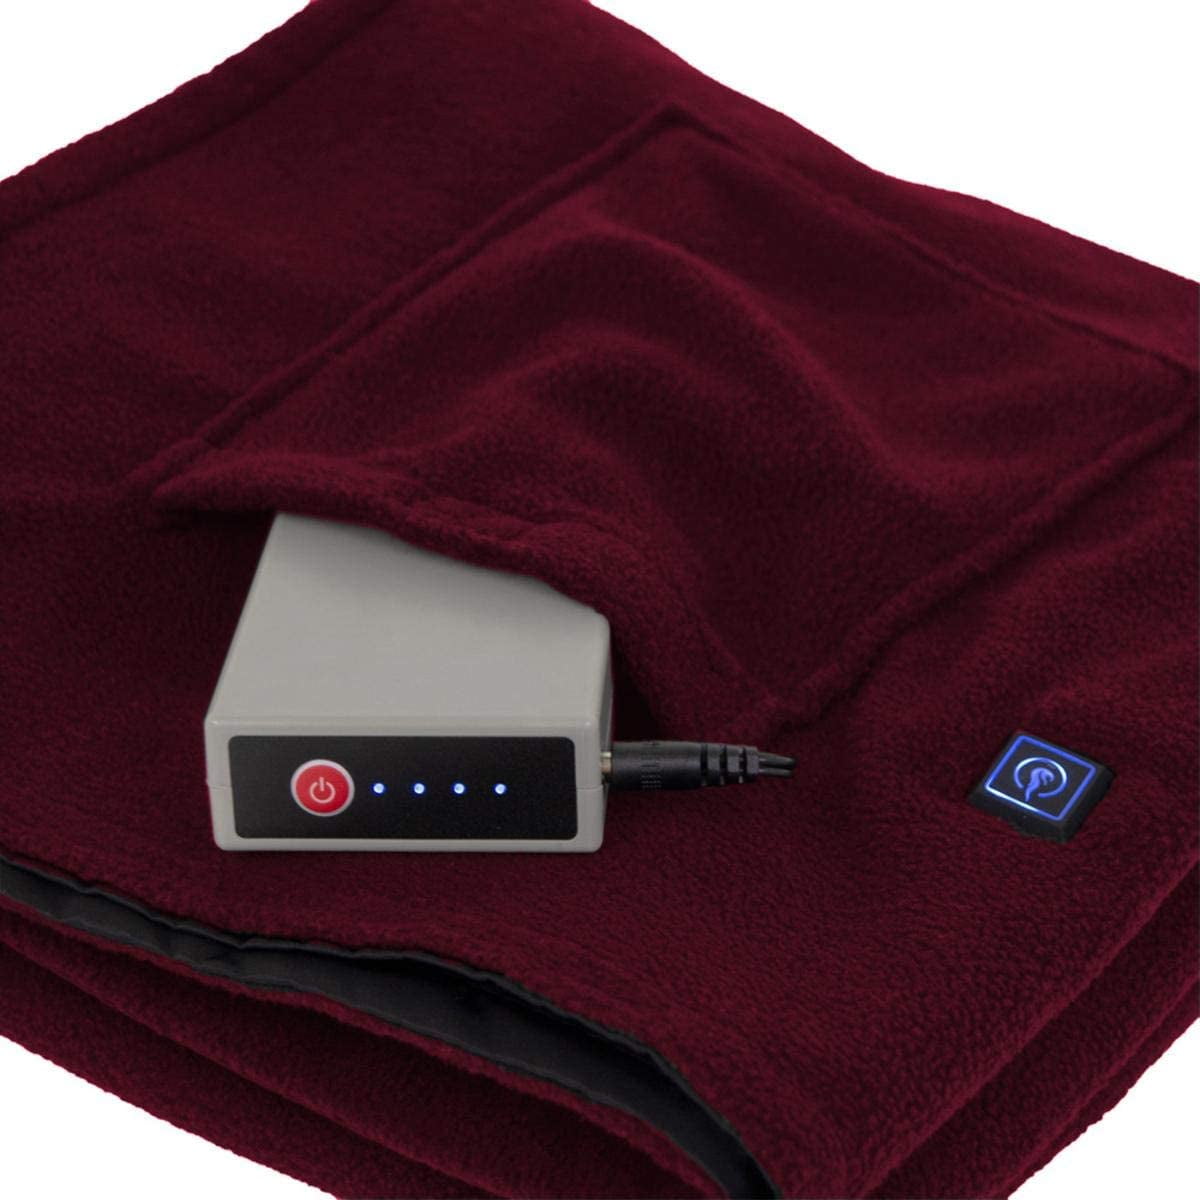 battery powered blanket